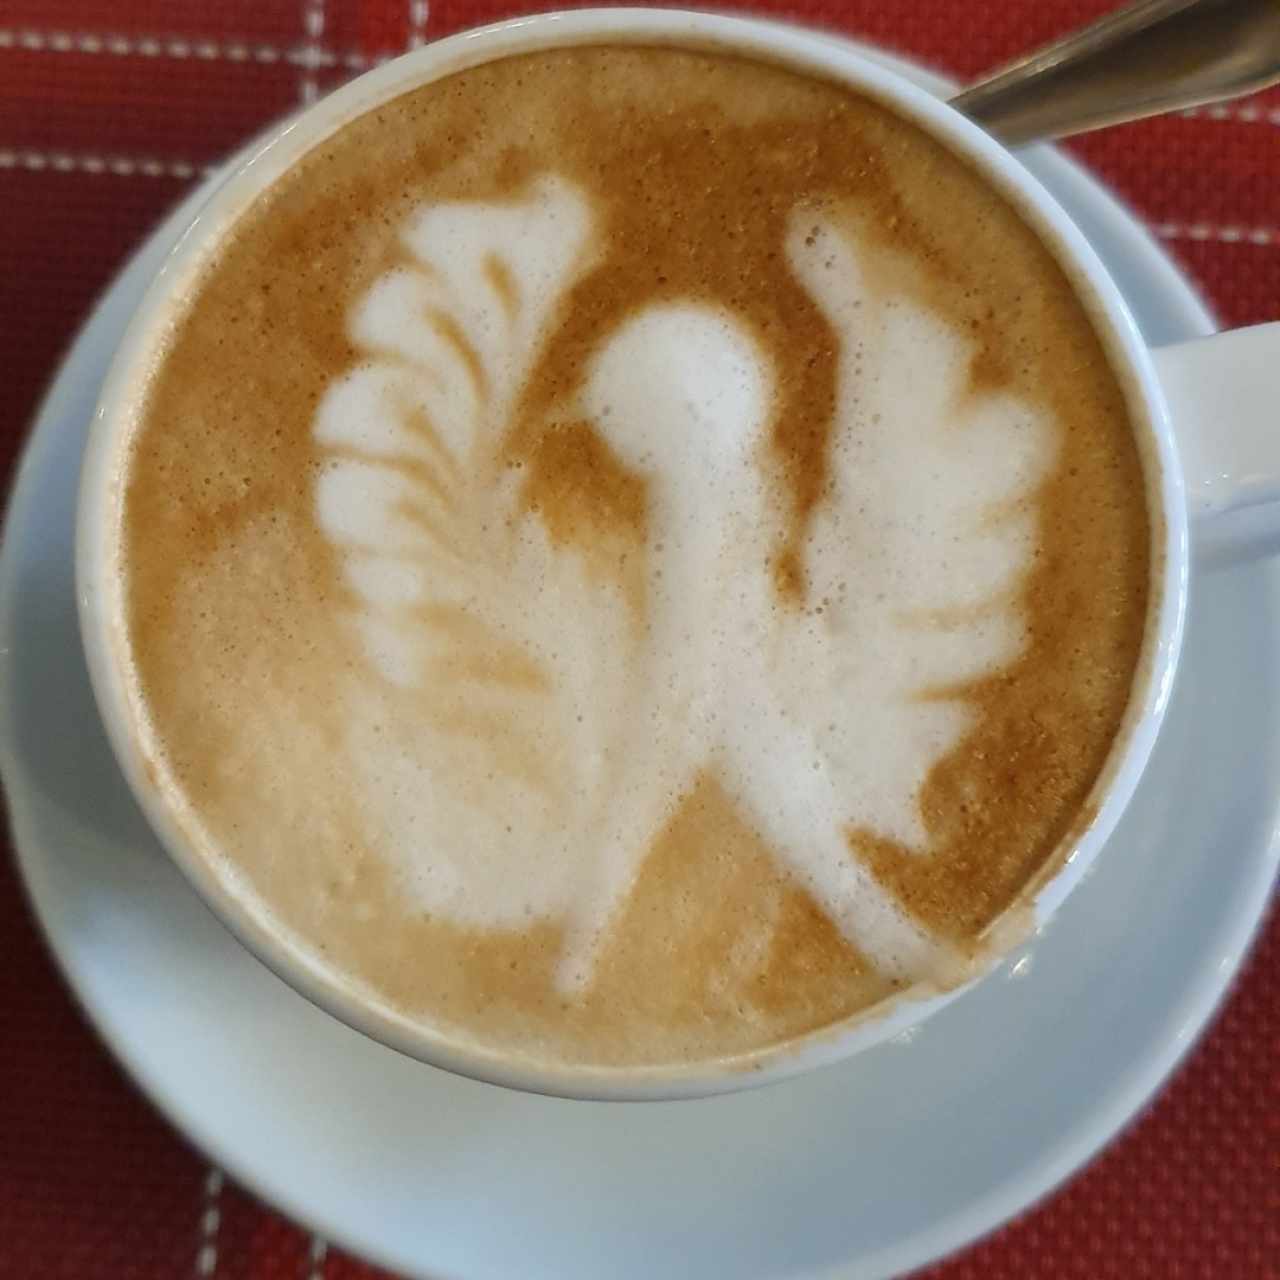 café latte con figurita (pájaro?) 